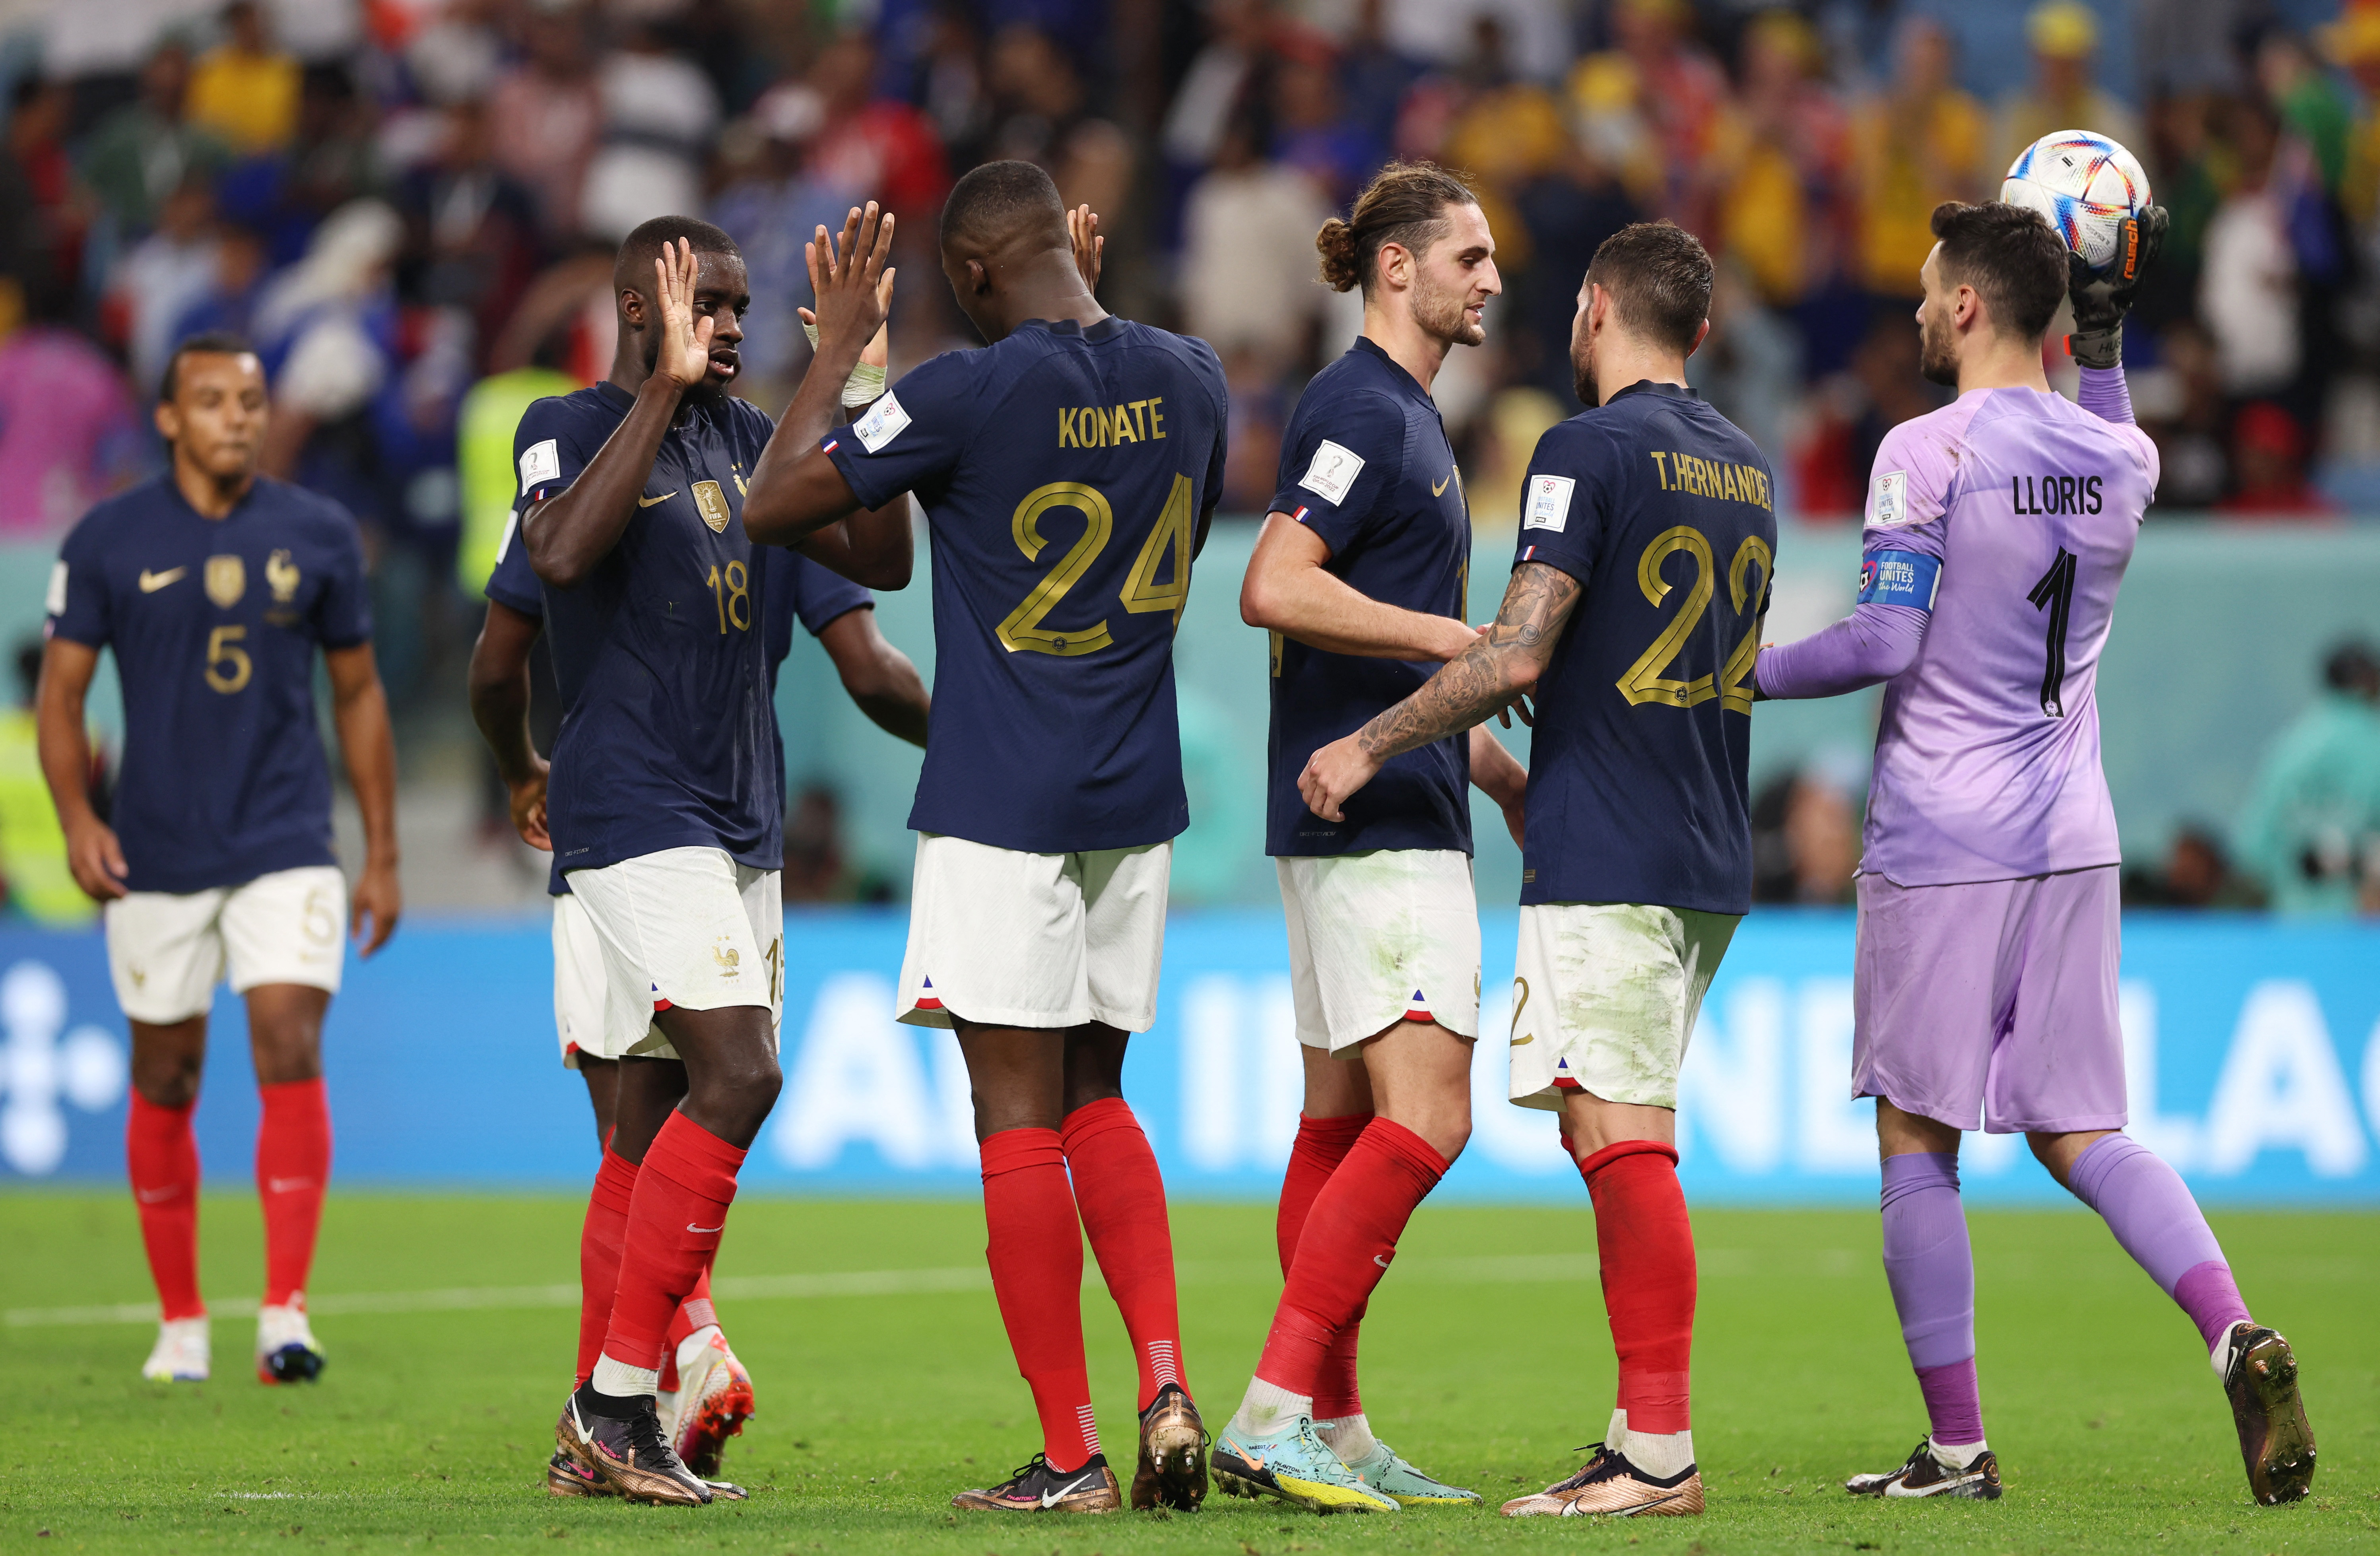 Francia goleó 4-1 a Australia en su debut en Qatar 2022. Los jugadores del campeón del mundo celebran la victoria (REUTERS/Matthew Childs)